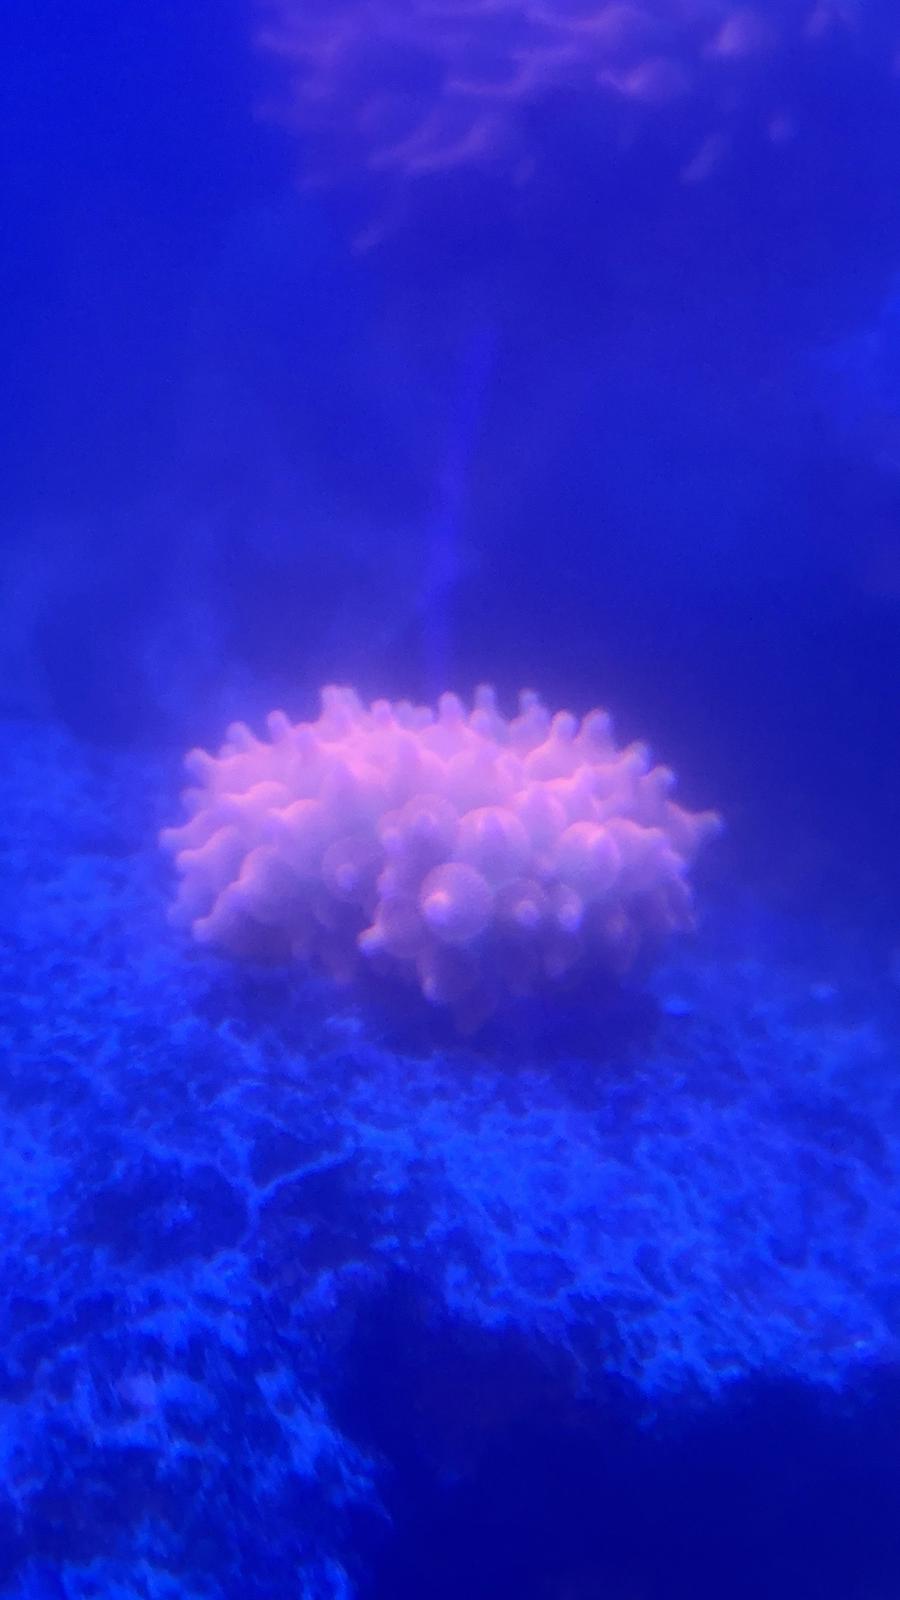 Rainbow bubble tip anemones